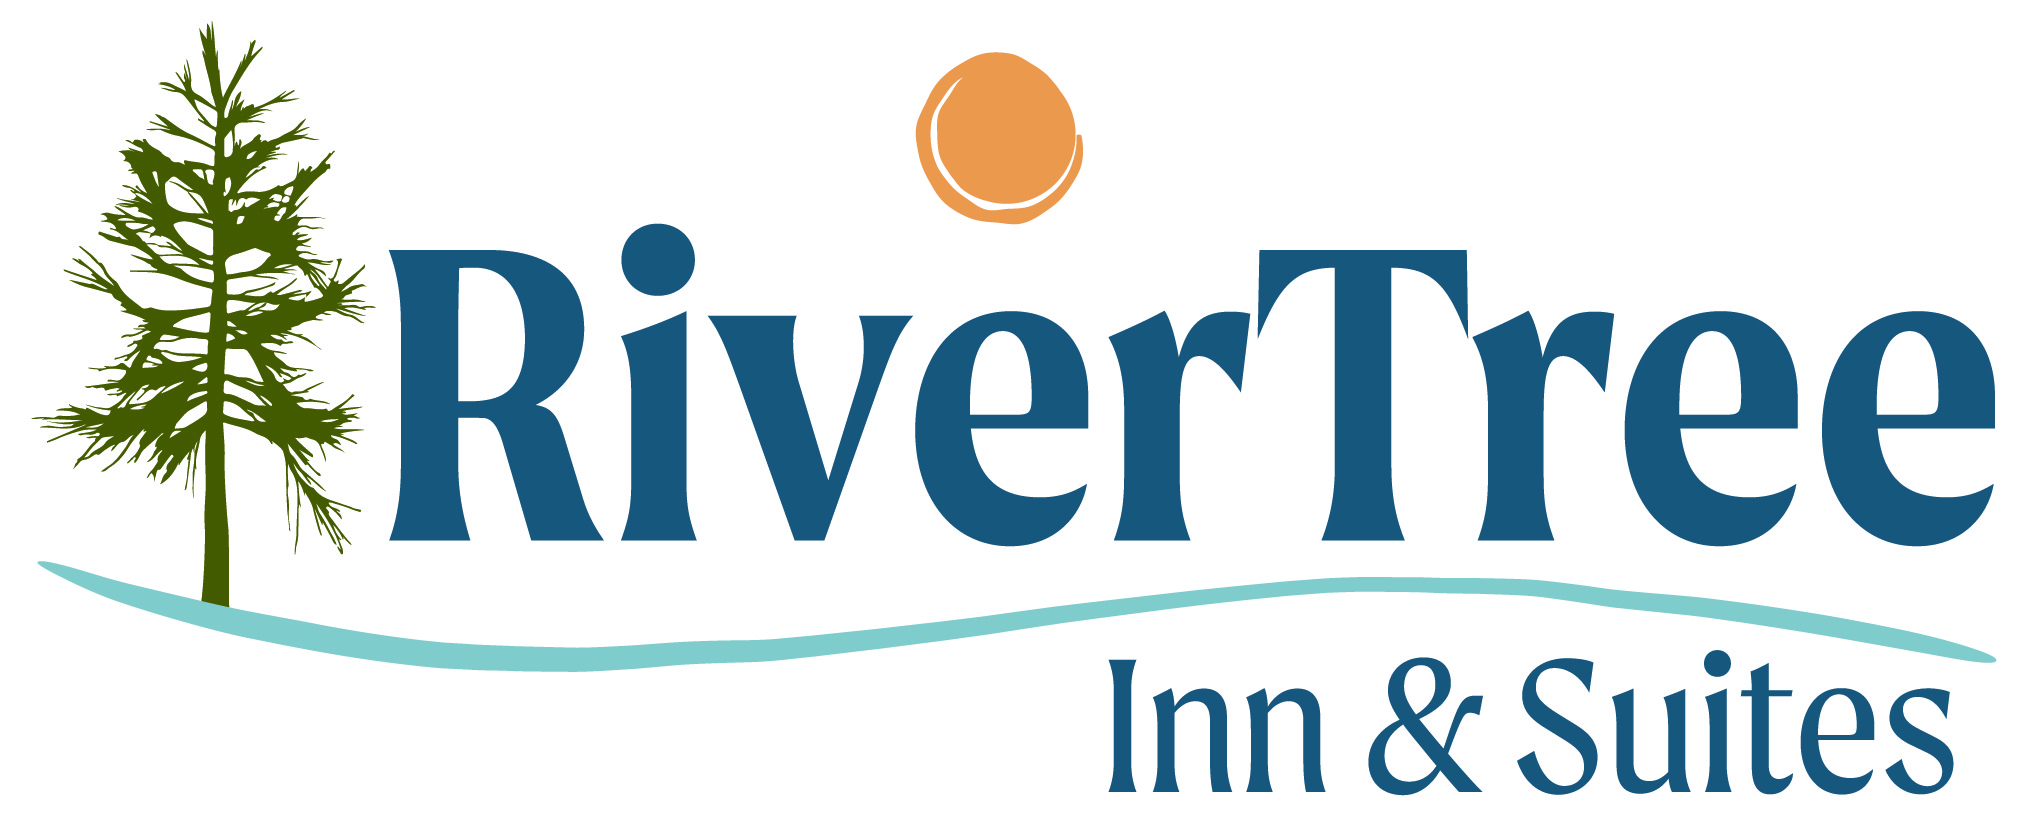 Rivertree Inn